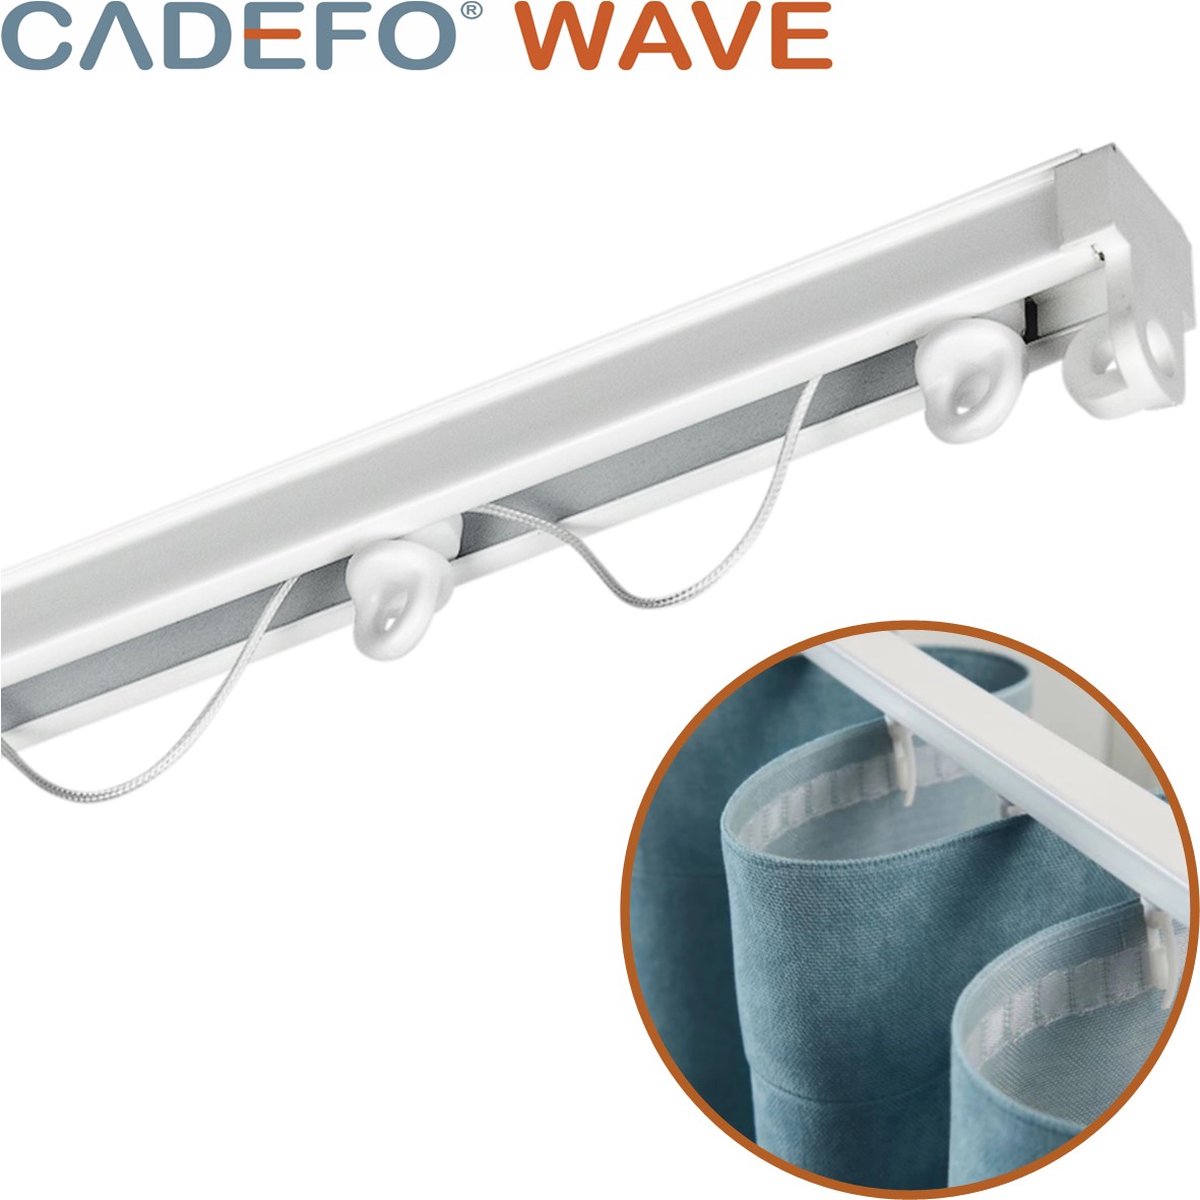 CADEFO WAVE (401 - 450 cm) Gordijnrails - Compleet op maat! - UIT 1 STUK - Leverbaar tot 6 meter - Plafondbevestiging - Lengte 426 cm